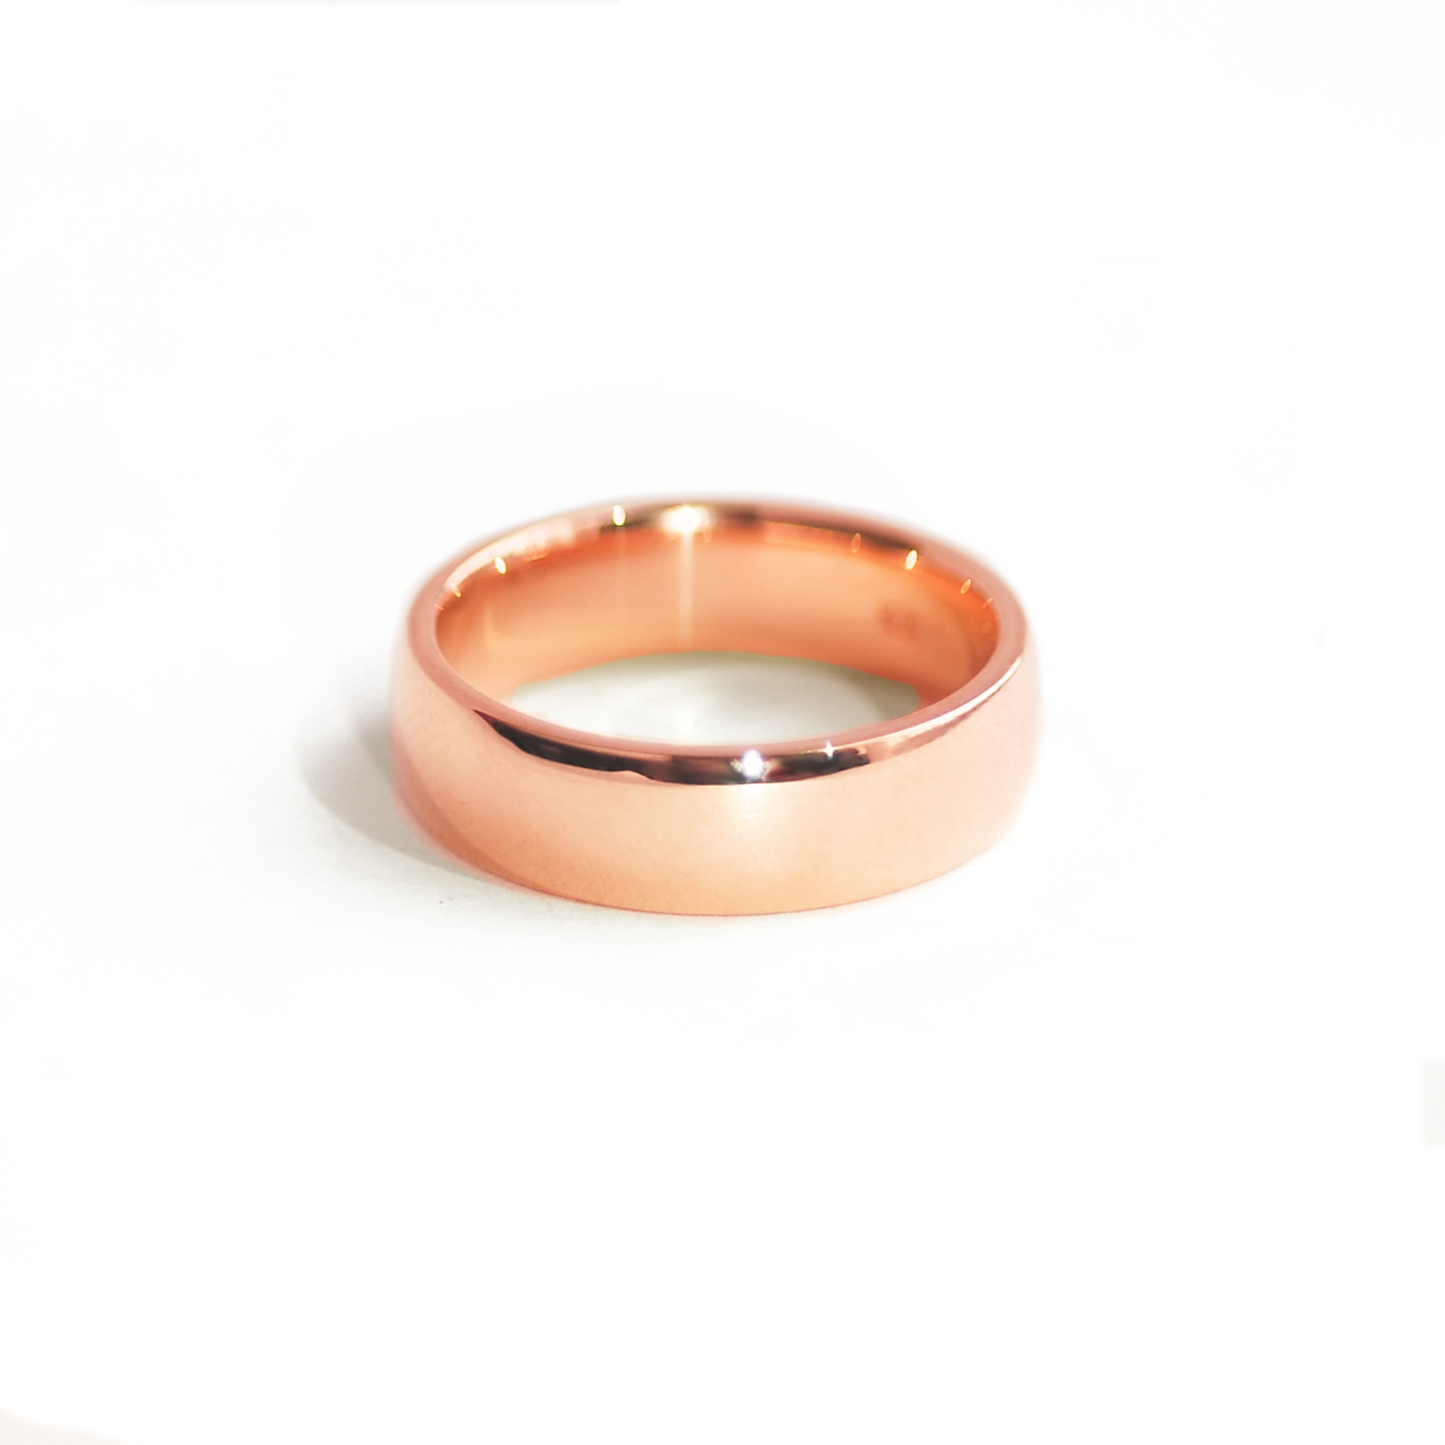 3mm wide wedding band in polished 14K rose gold | Golden Flamingo